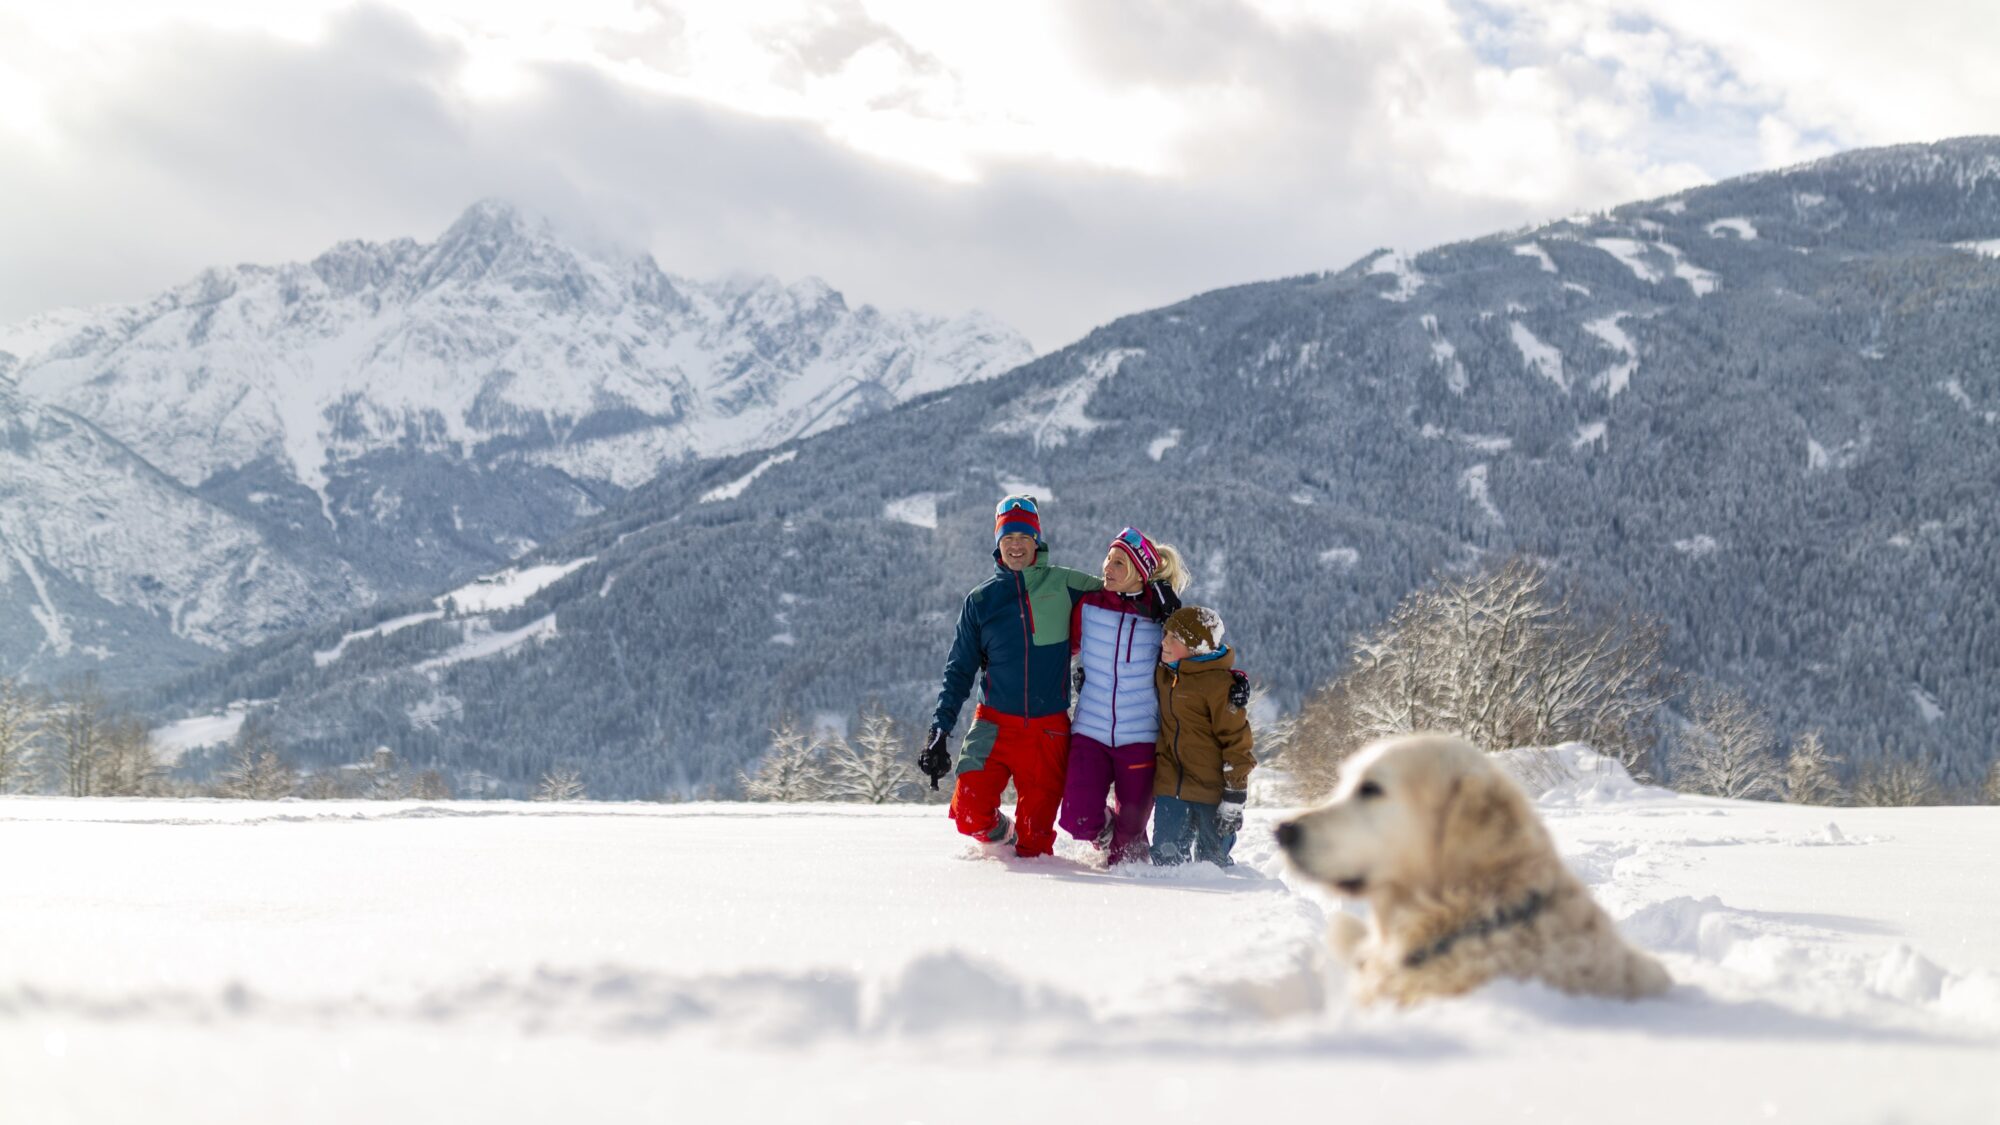 L'escursionismo invernale con il cane è sicuramente possibile nei migliori hotel per escursionisti alpini.